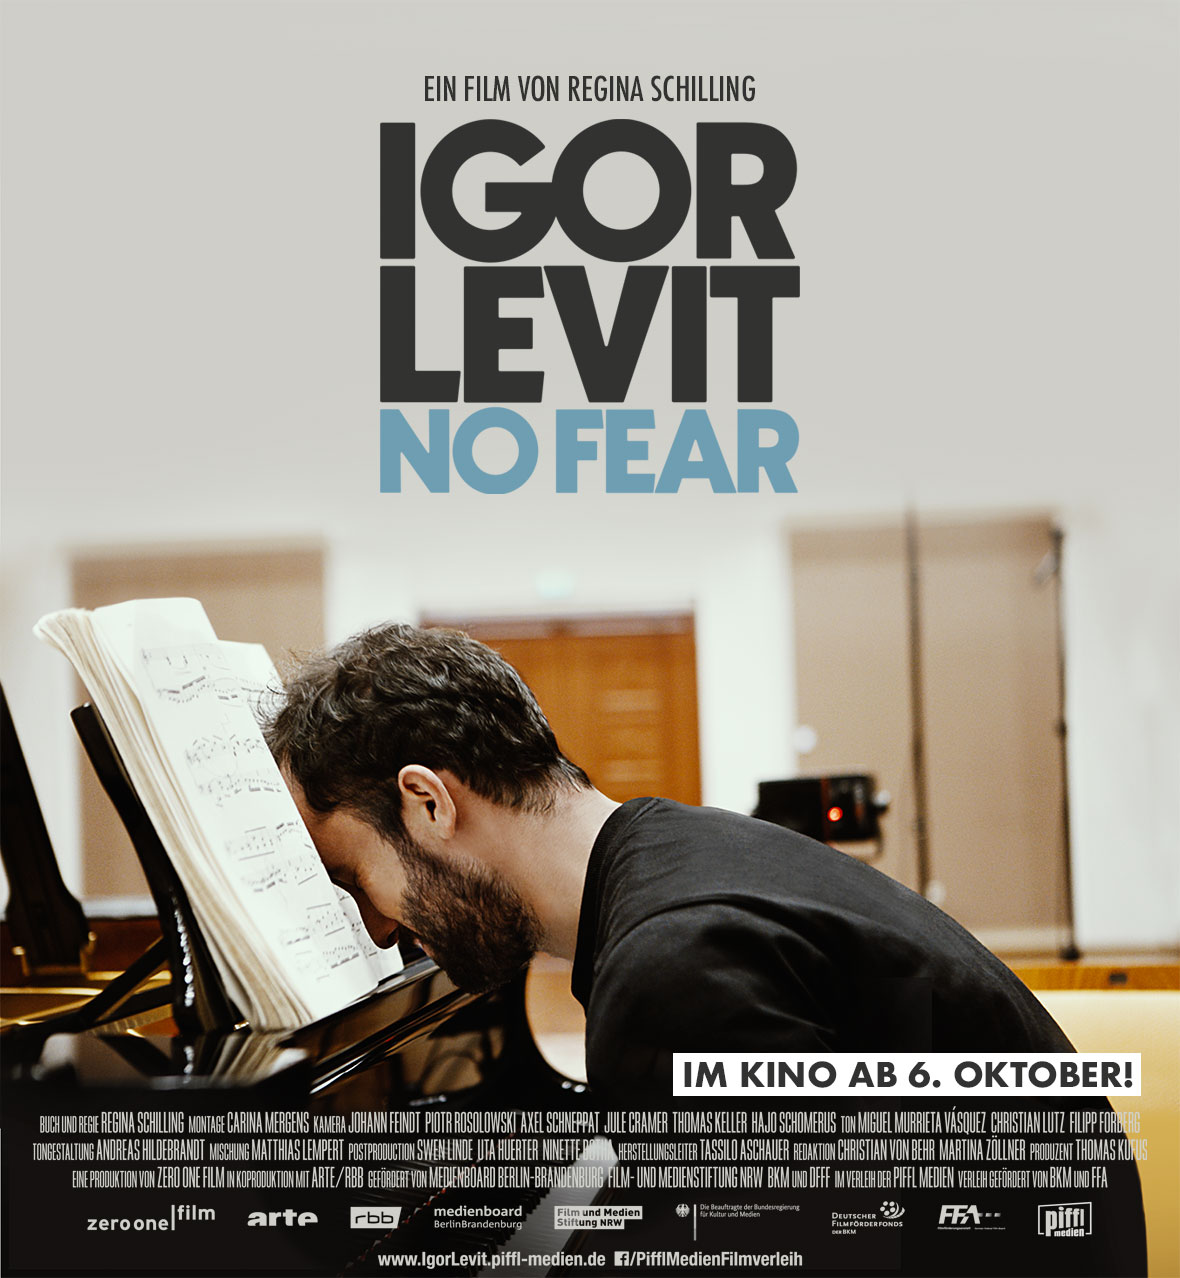 IGOR LEVIT - NO FEAR | Ein Film von Regina Schilling | Im Kino ab 6. Oktober 2022!Start